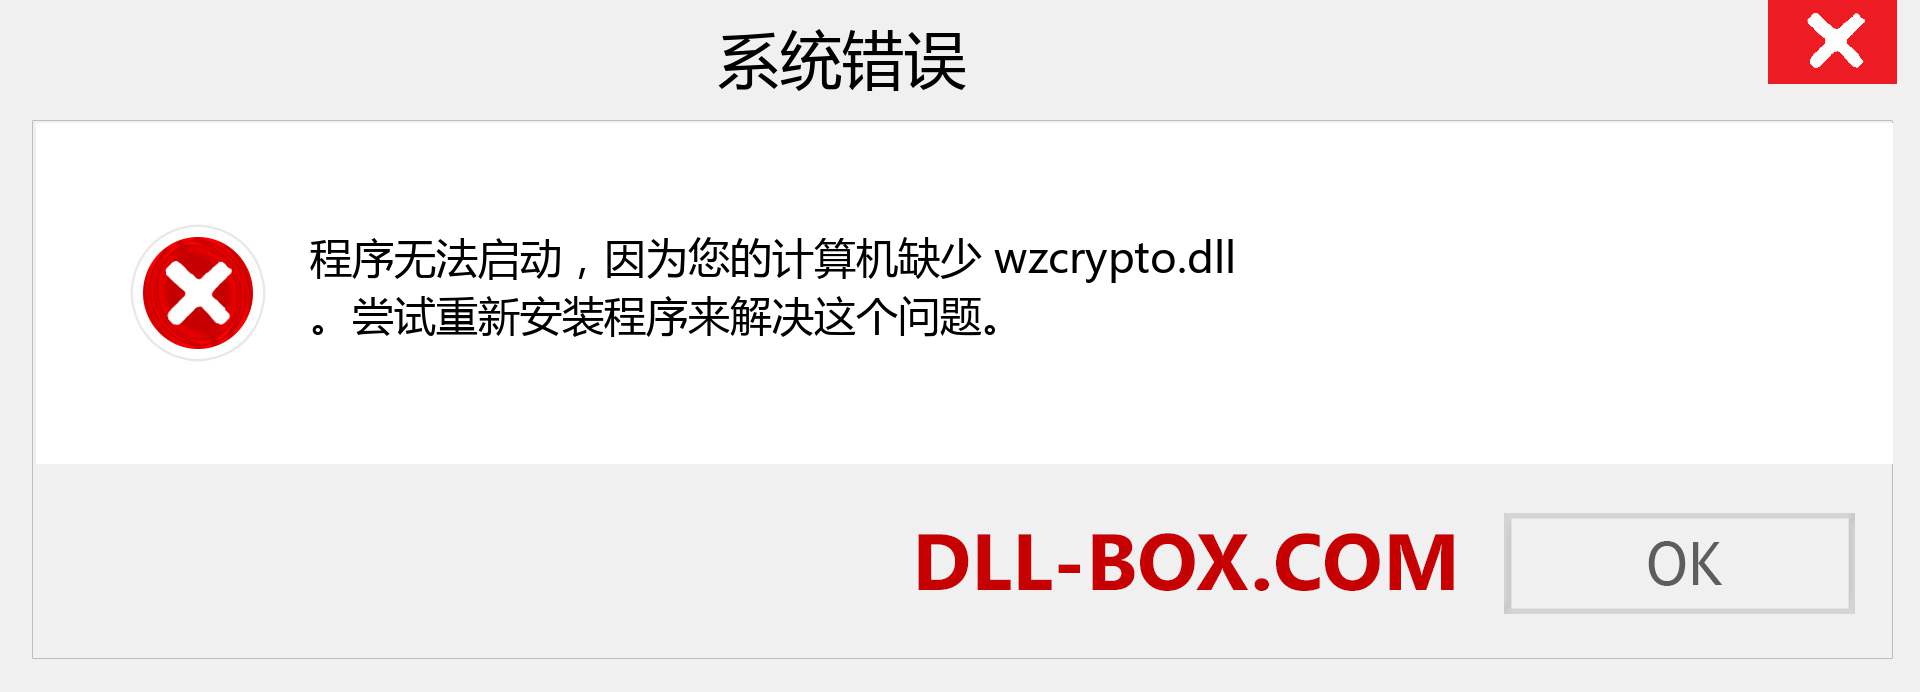 wzcrypto.dll 文件丢失？。 适用于 Windows 7、8、10 的下载 - 修复 Windows、照片、图像上的 wzcrypto dll 丢失错误